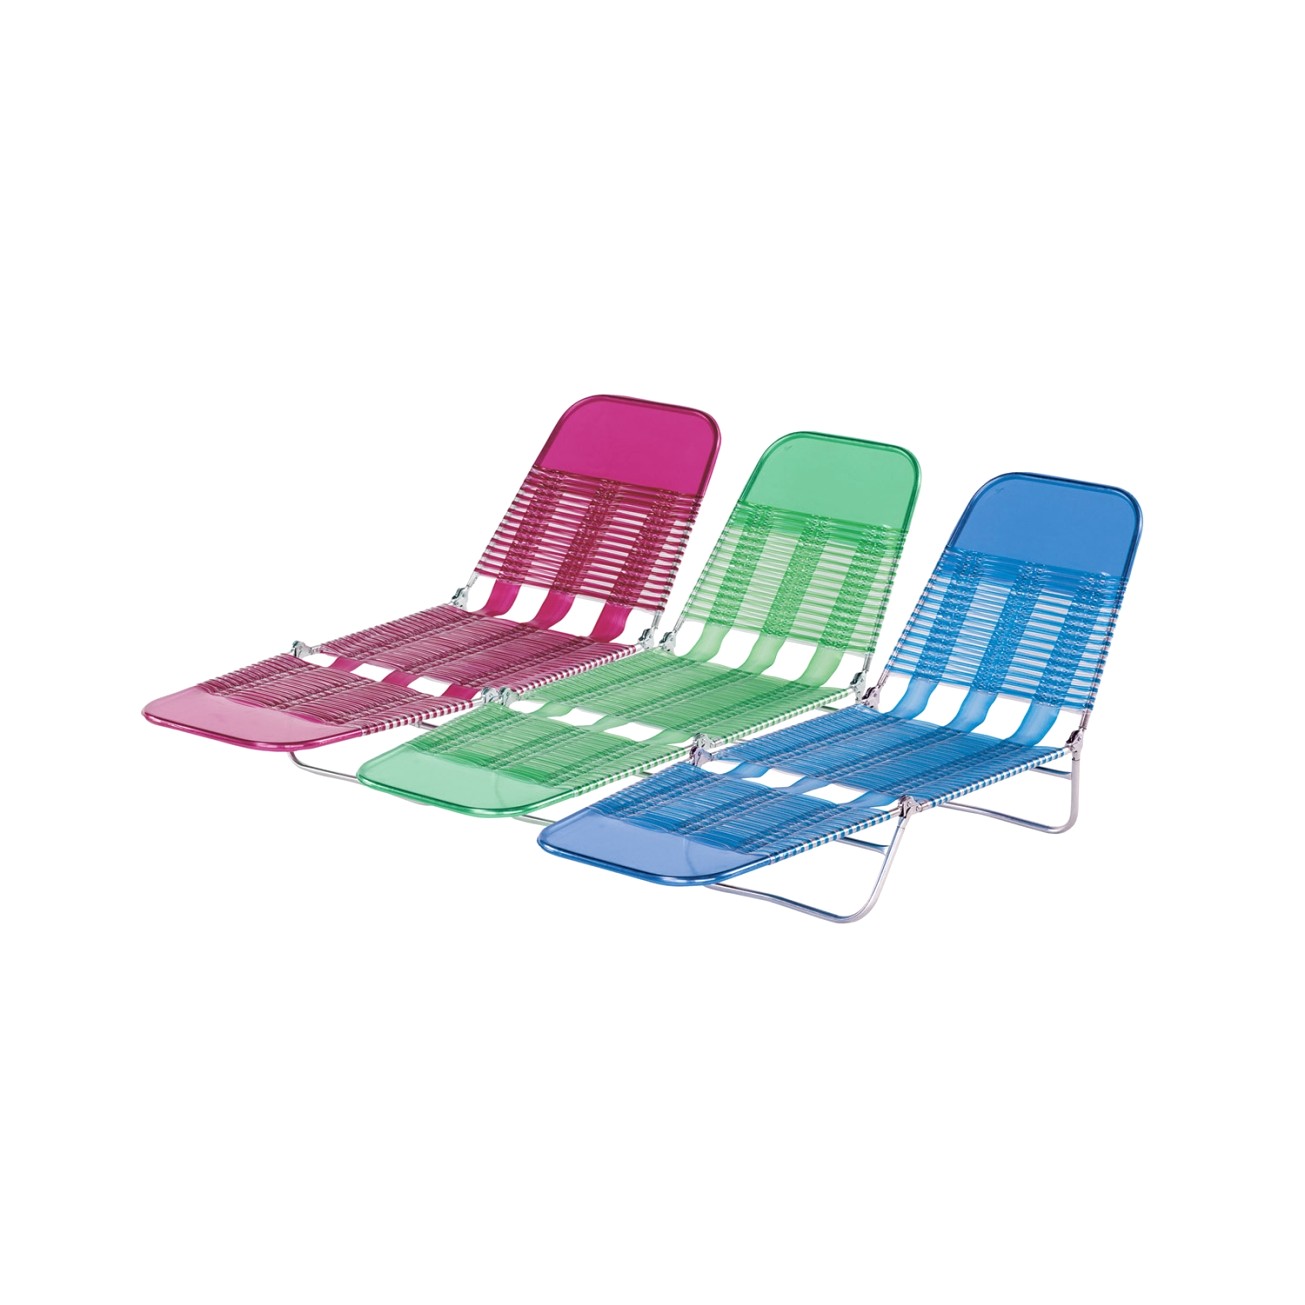 tri folding beach chair